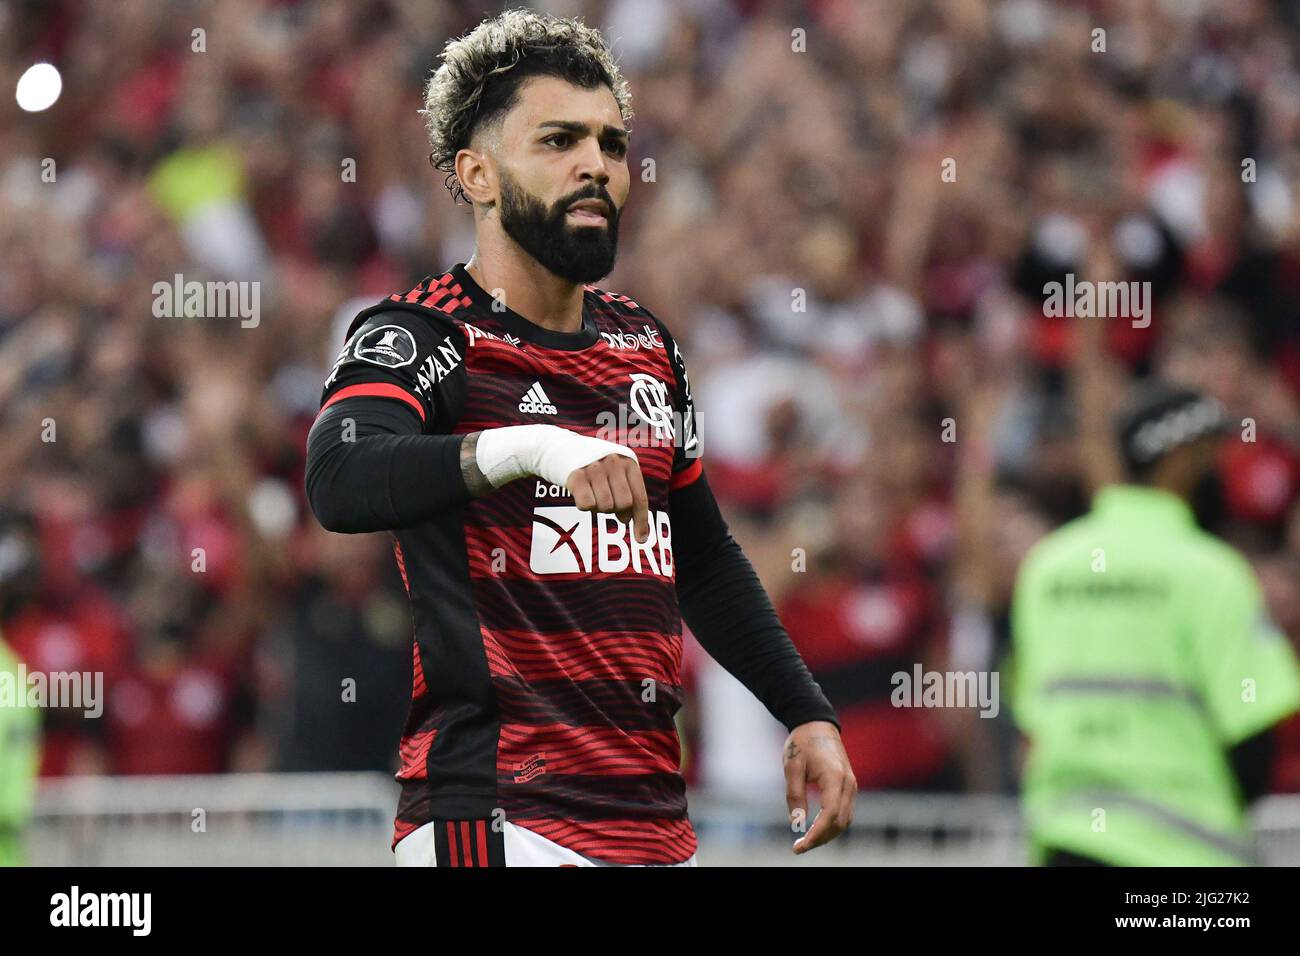 Gabriel Barbosa do Flamengo, comemora o seu gol durante a partida entre Flamengo e Tolima (COL), pelas oitavas de final da Copa Libertadores 2022, no Estádio do Maracanã nesta quarta-feira 06. / PRESSINPHOTO Stock Photo